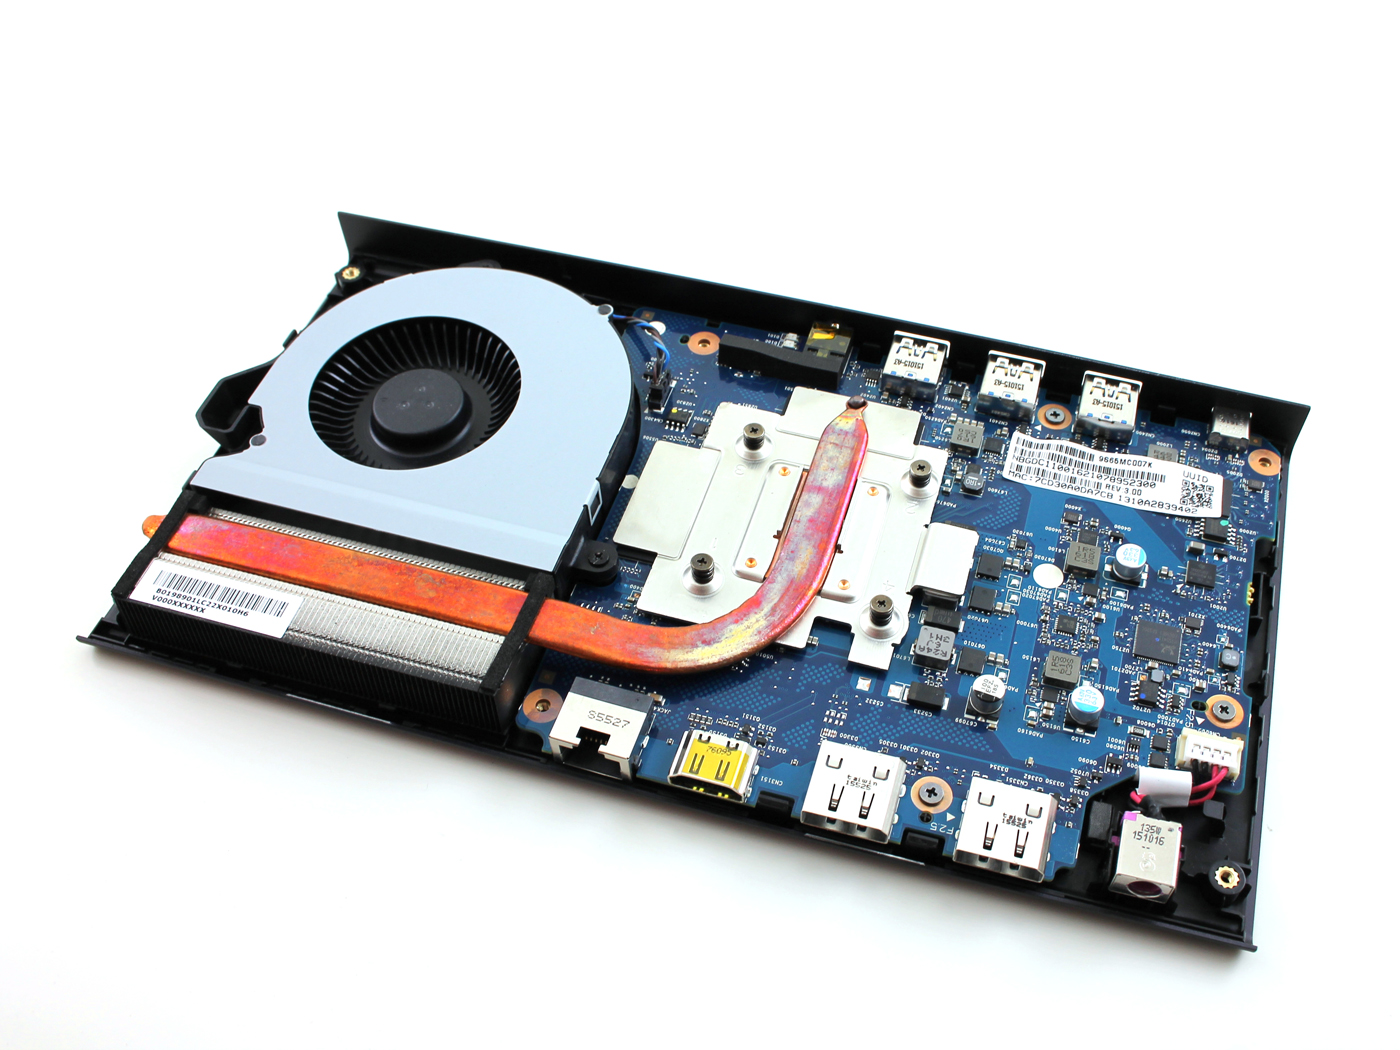 Nvidia Geforce Gtx 960m Купить Для Ноутбука